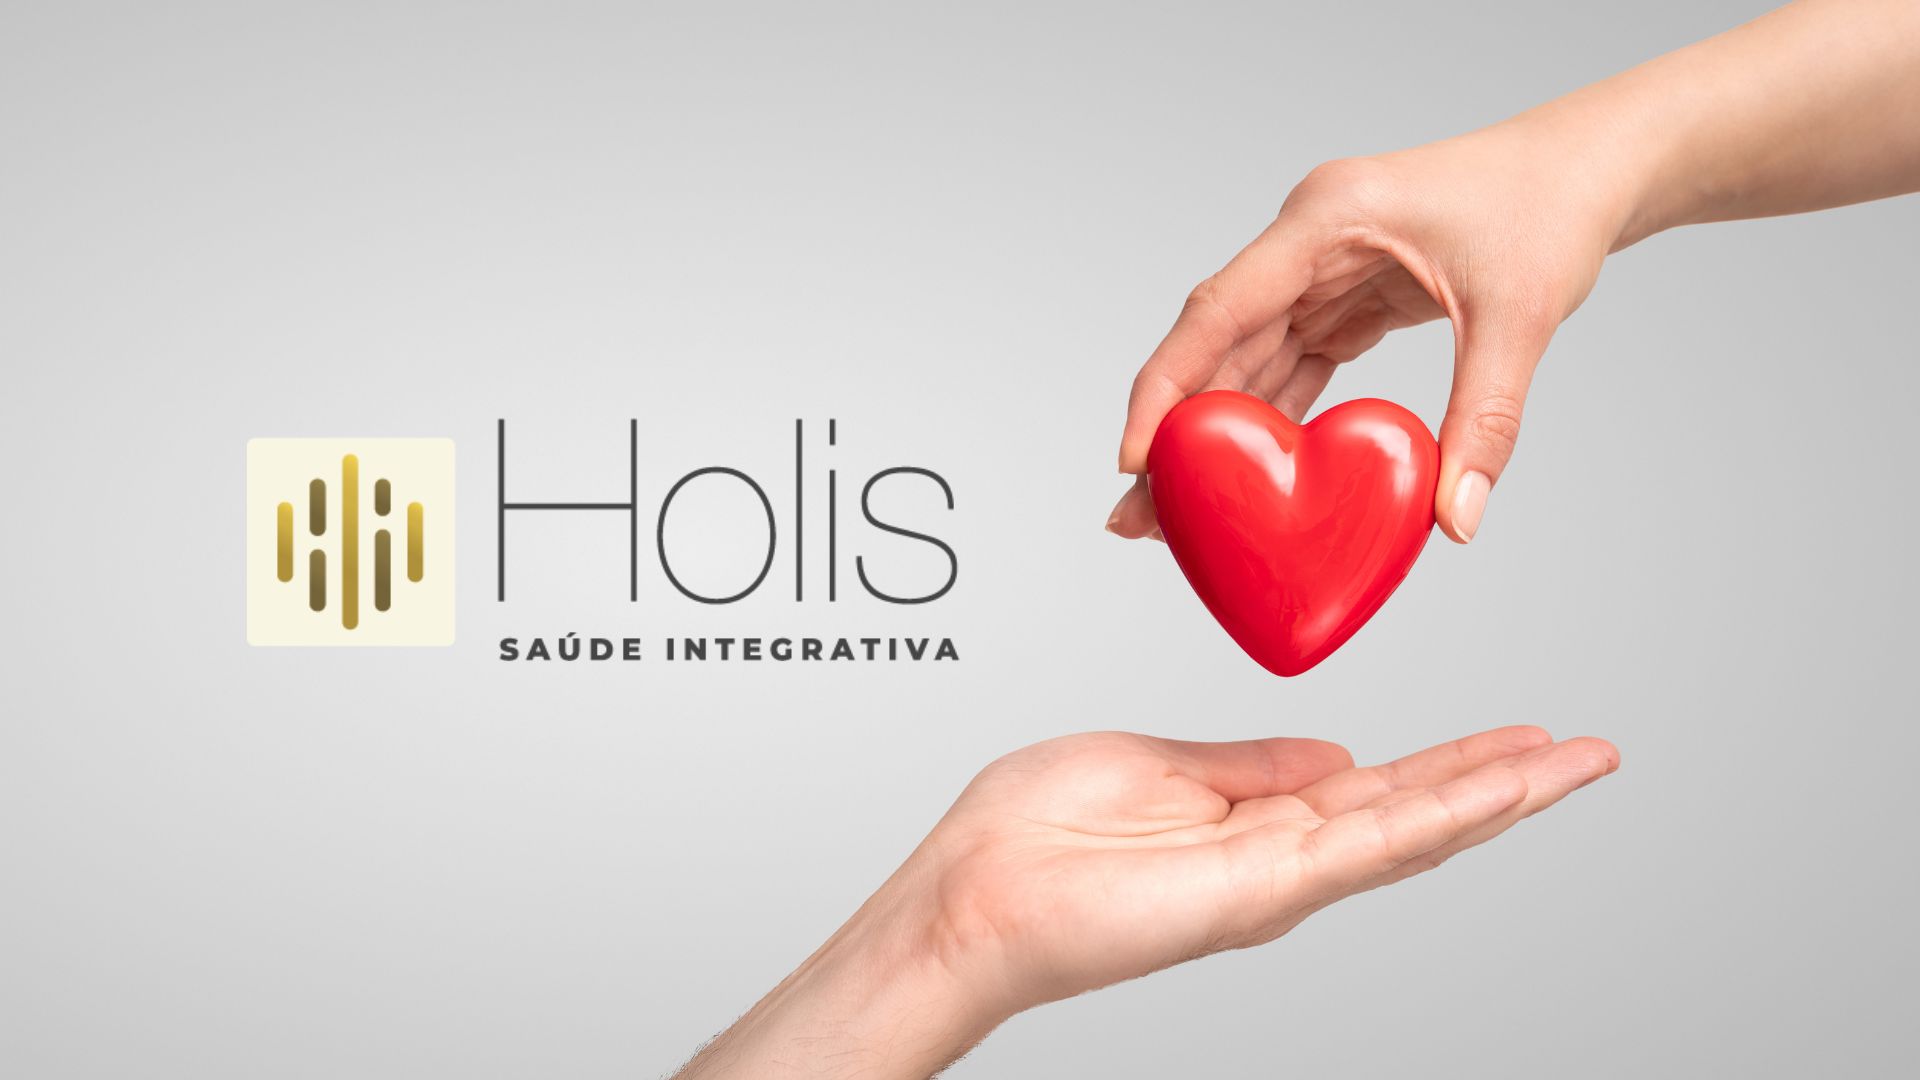 (c) Holis.com.br